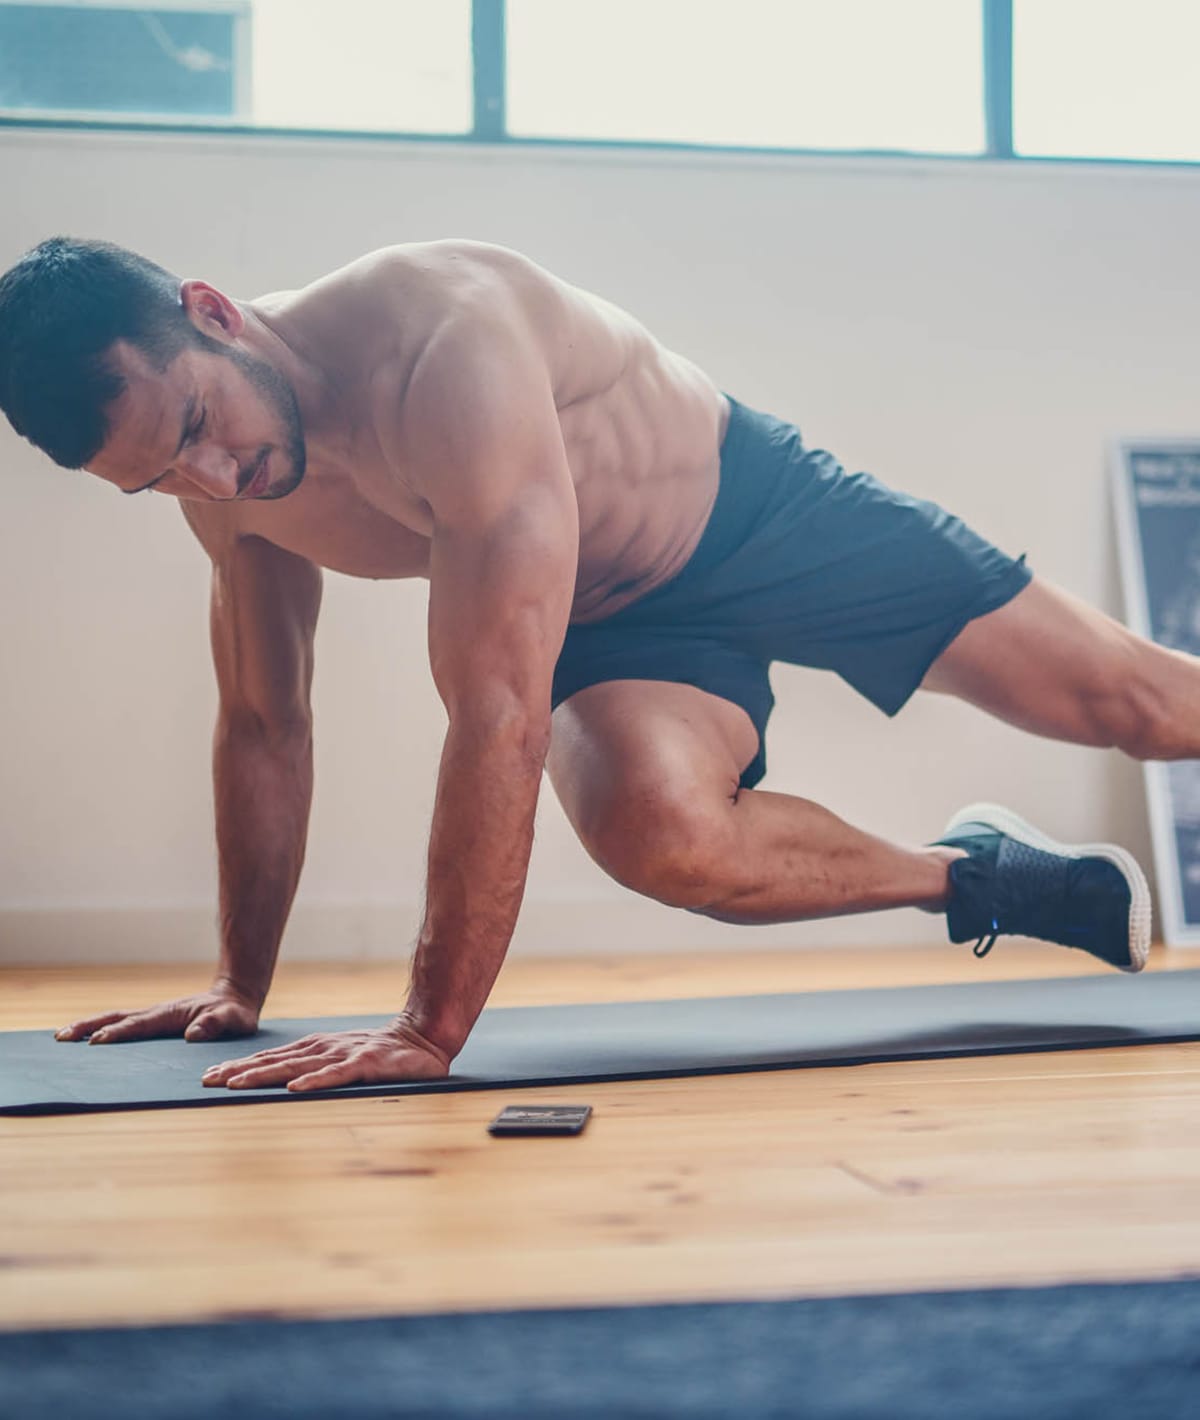 Fitnessziele Erreichen Wie Effektiv Sind Kurze Workouts Wirklich